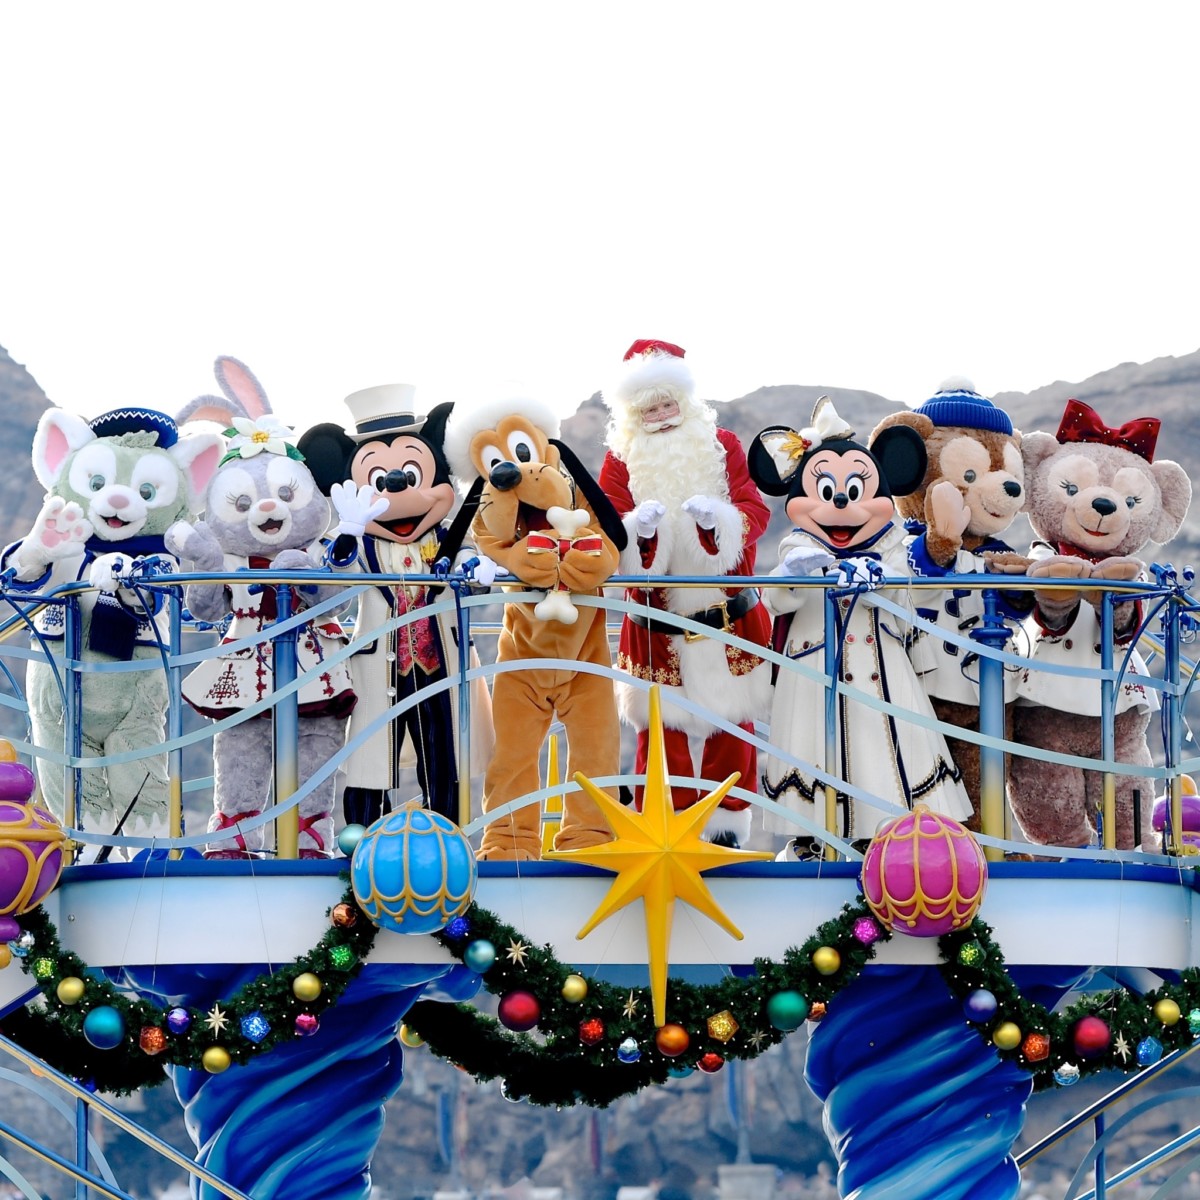 カラー オブ クリスマス がフィナーレ 東京ディズニーシー ディズニー クリスマス2019